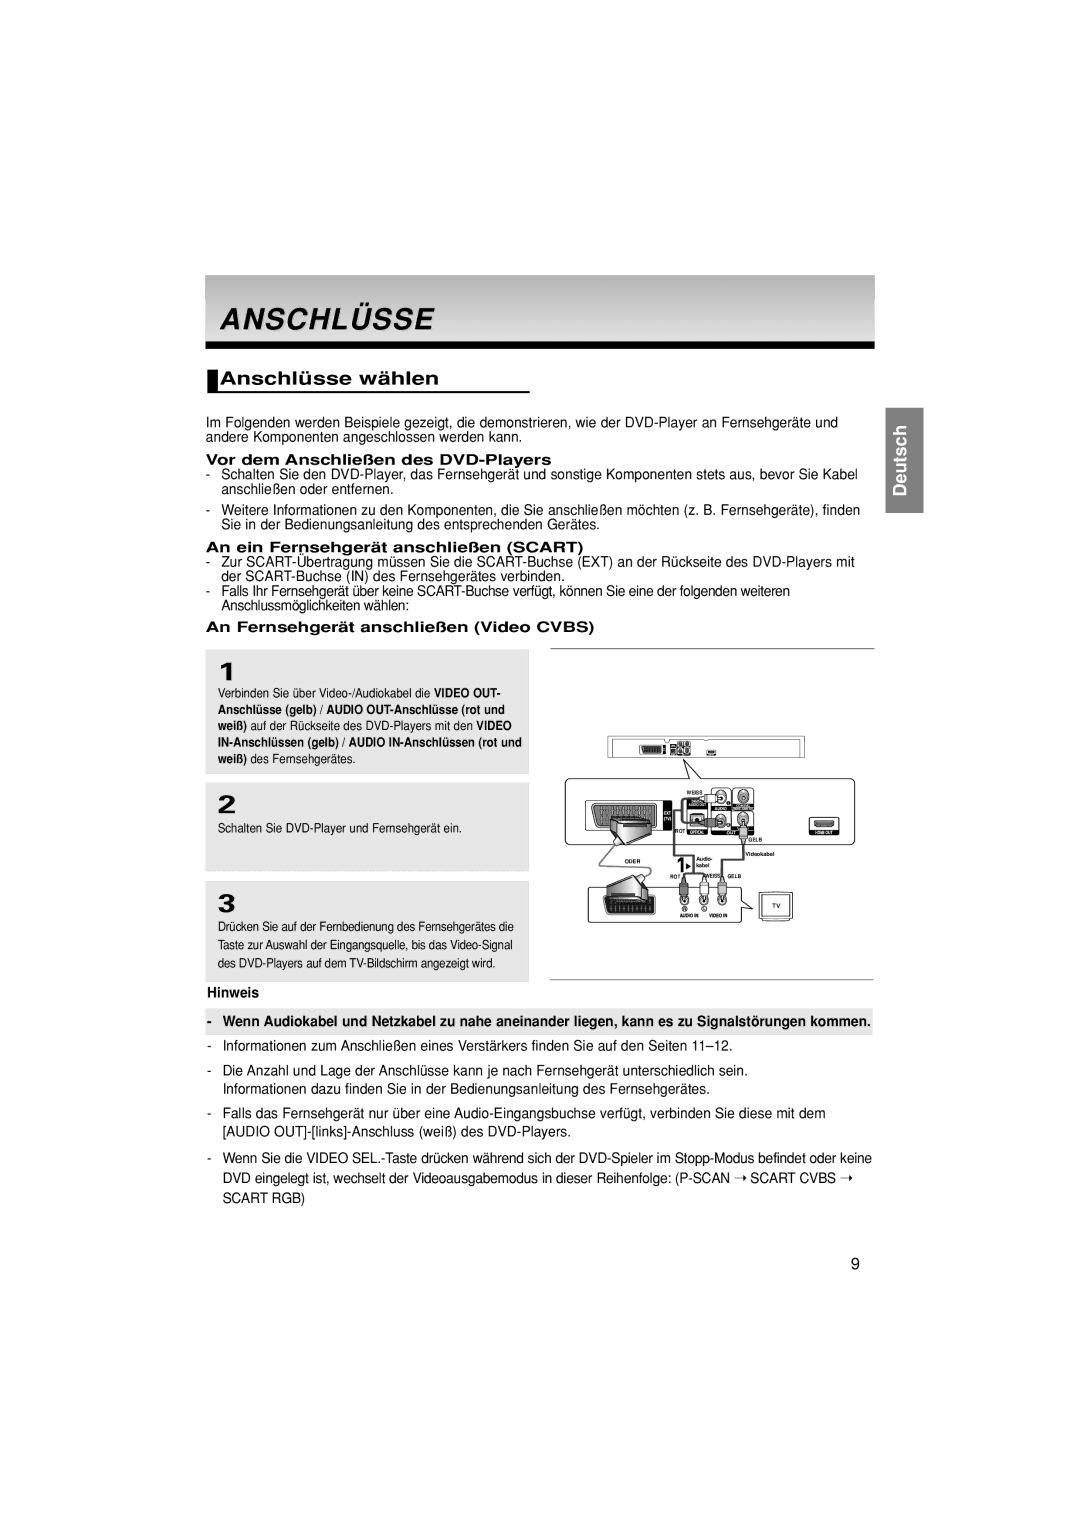 Samsung DVD-1080P8/XEE manual Anschlüsse wählen, Vor dem Anschließen des DVD-Players, An ein Fernsehgerät anschließen Scart 